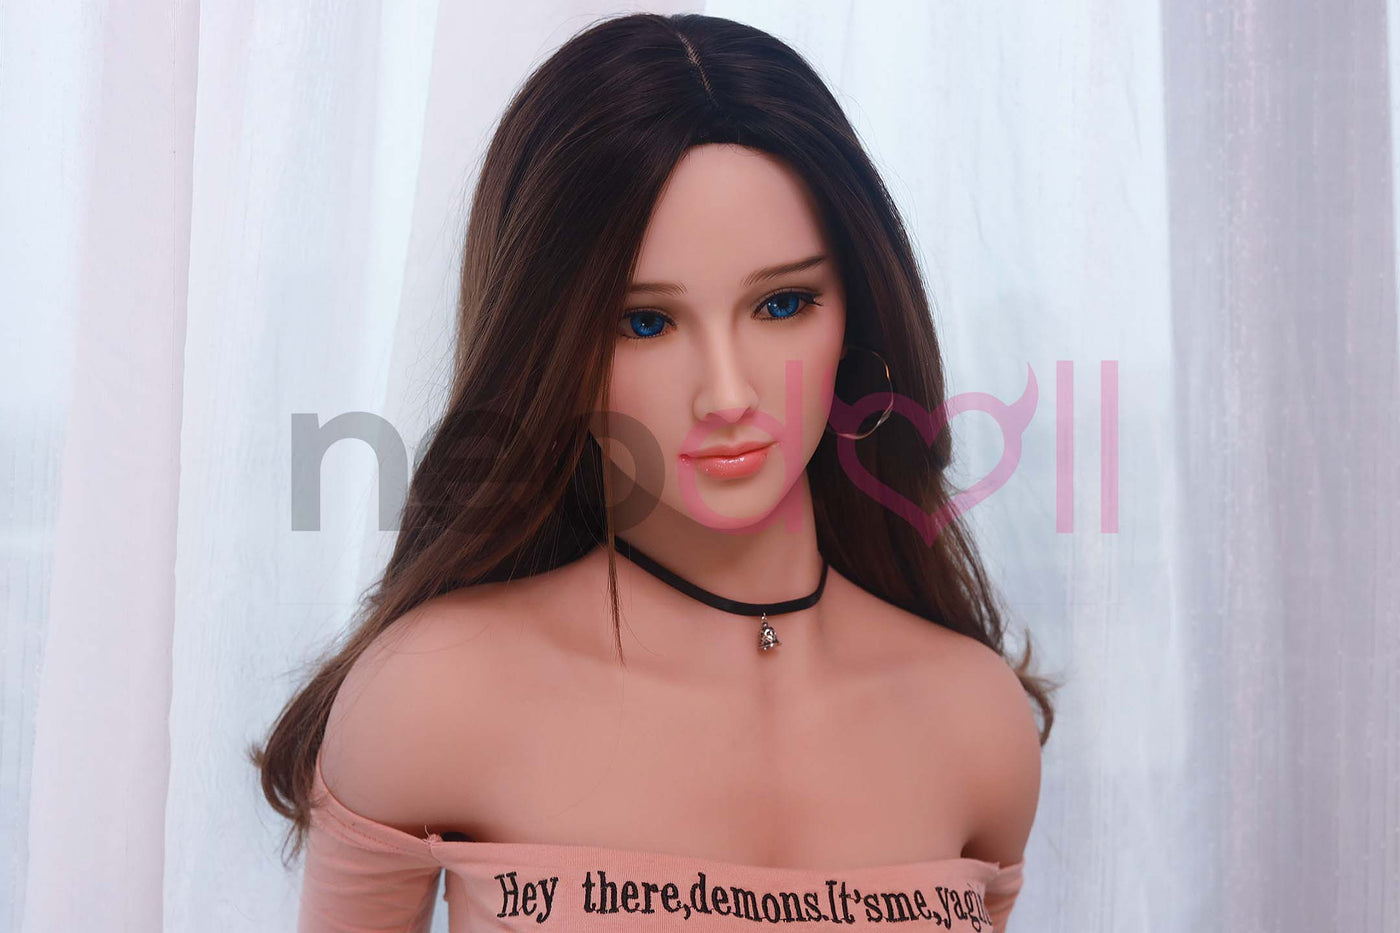 Neodoll Sugar Babe - Bianca - Realistic Sex Doll - Gel Breast - Uterus - 157cm - Wheat